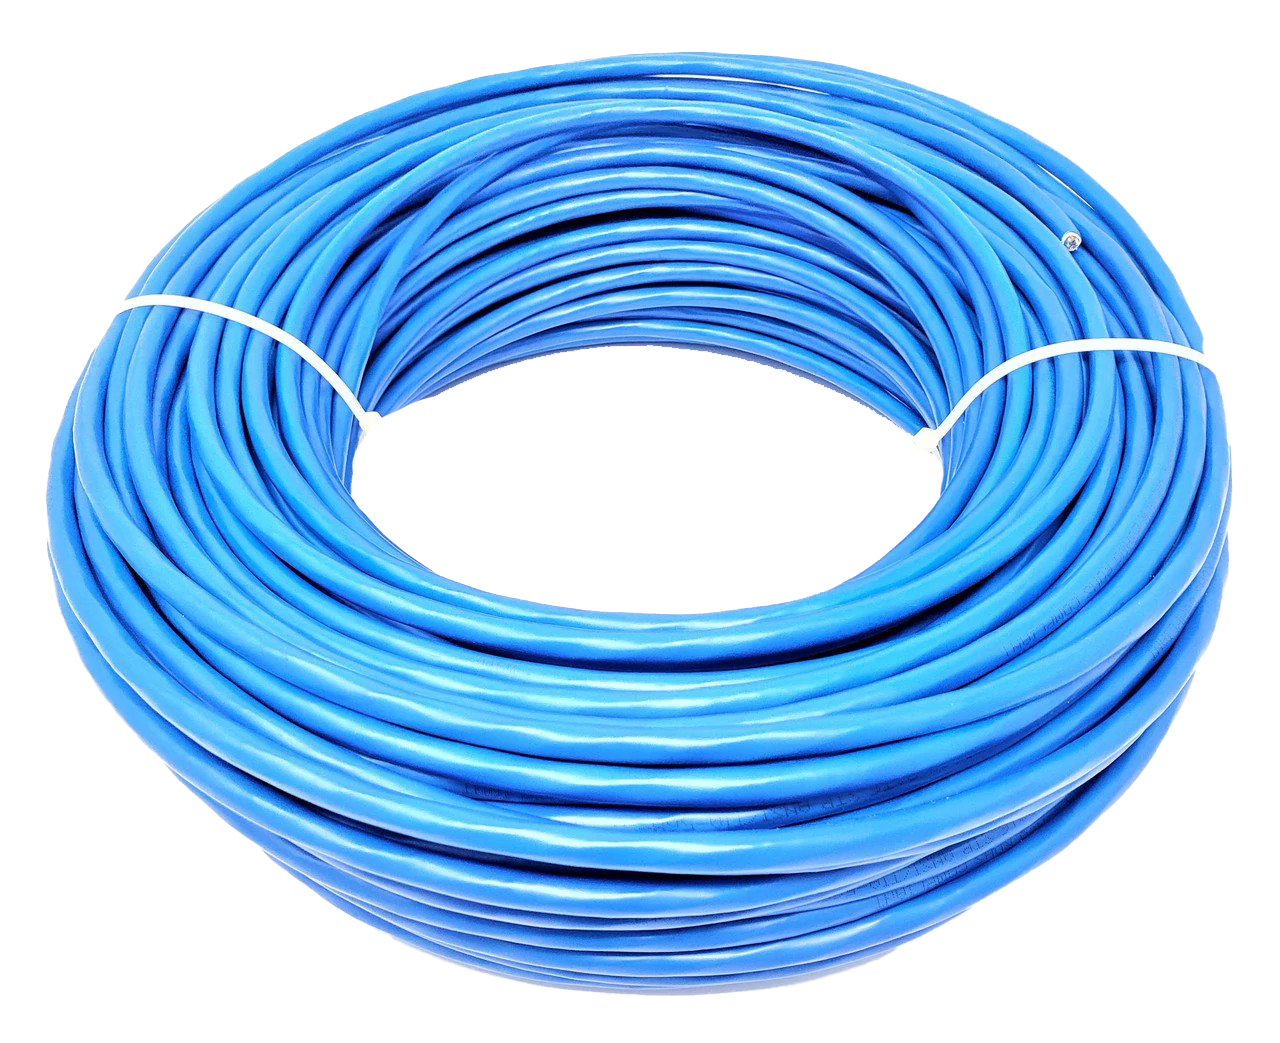 Blaues Ethernet-Kabel Transparentes Bild